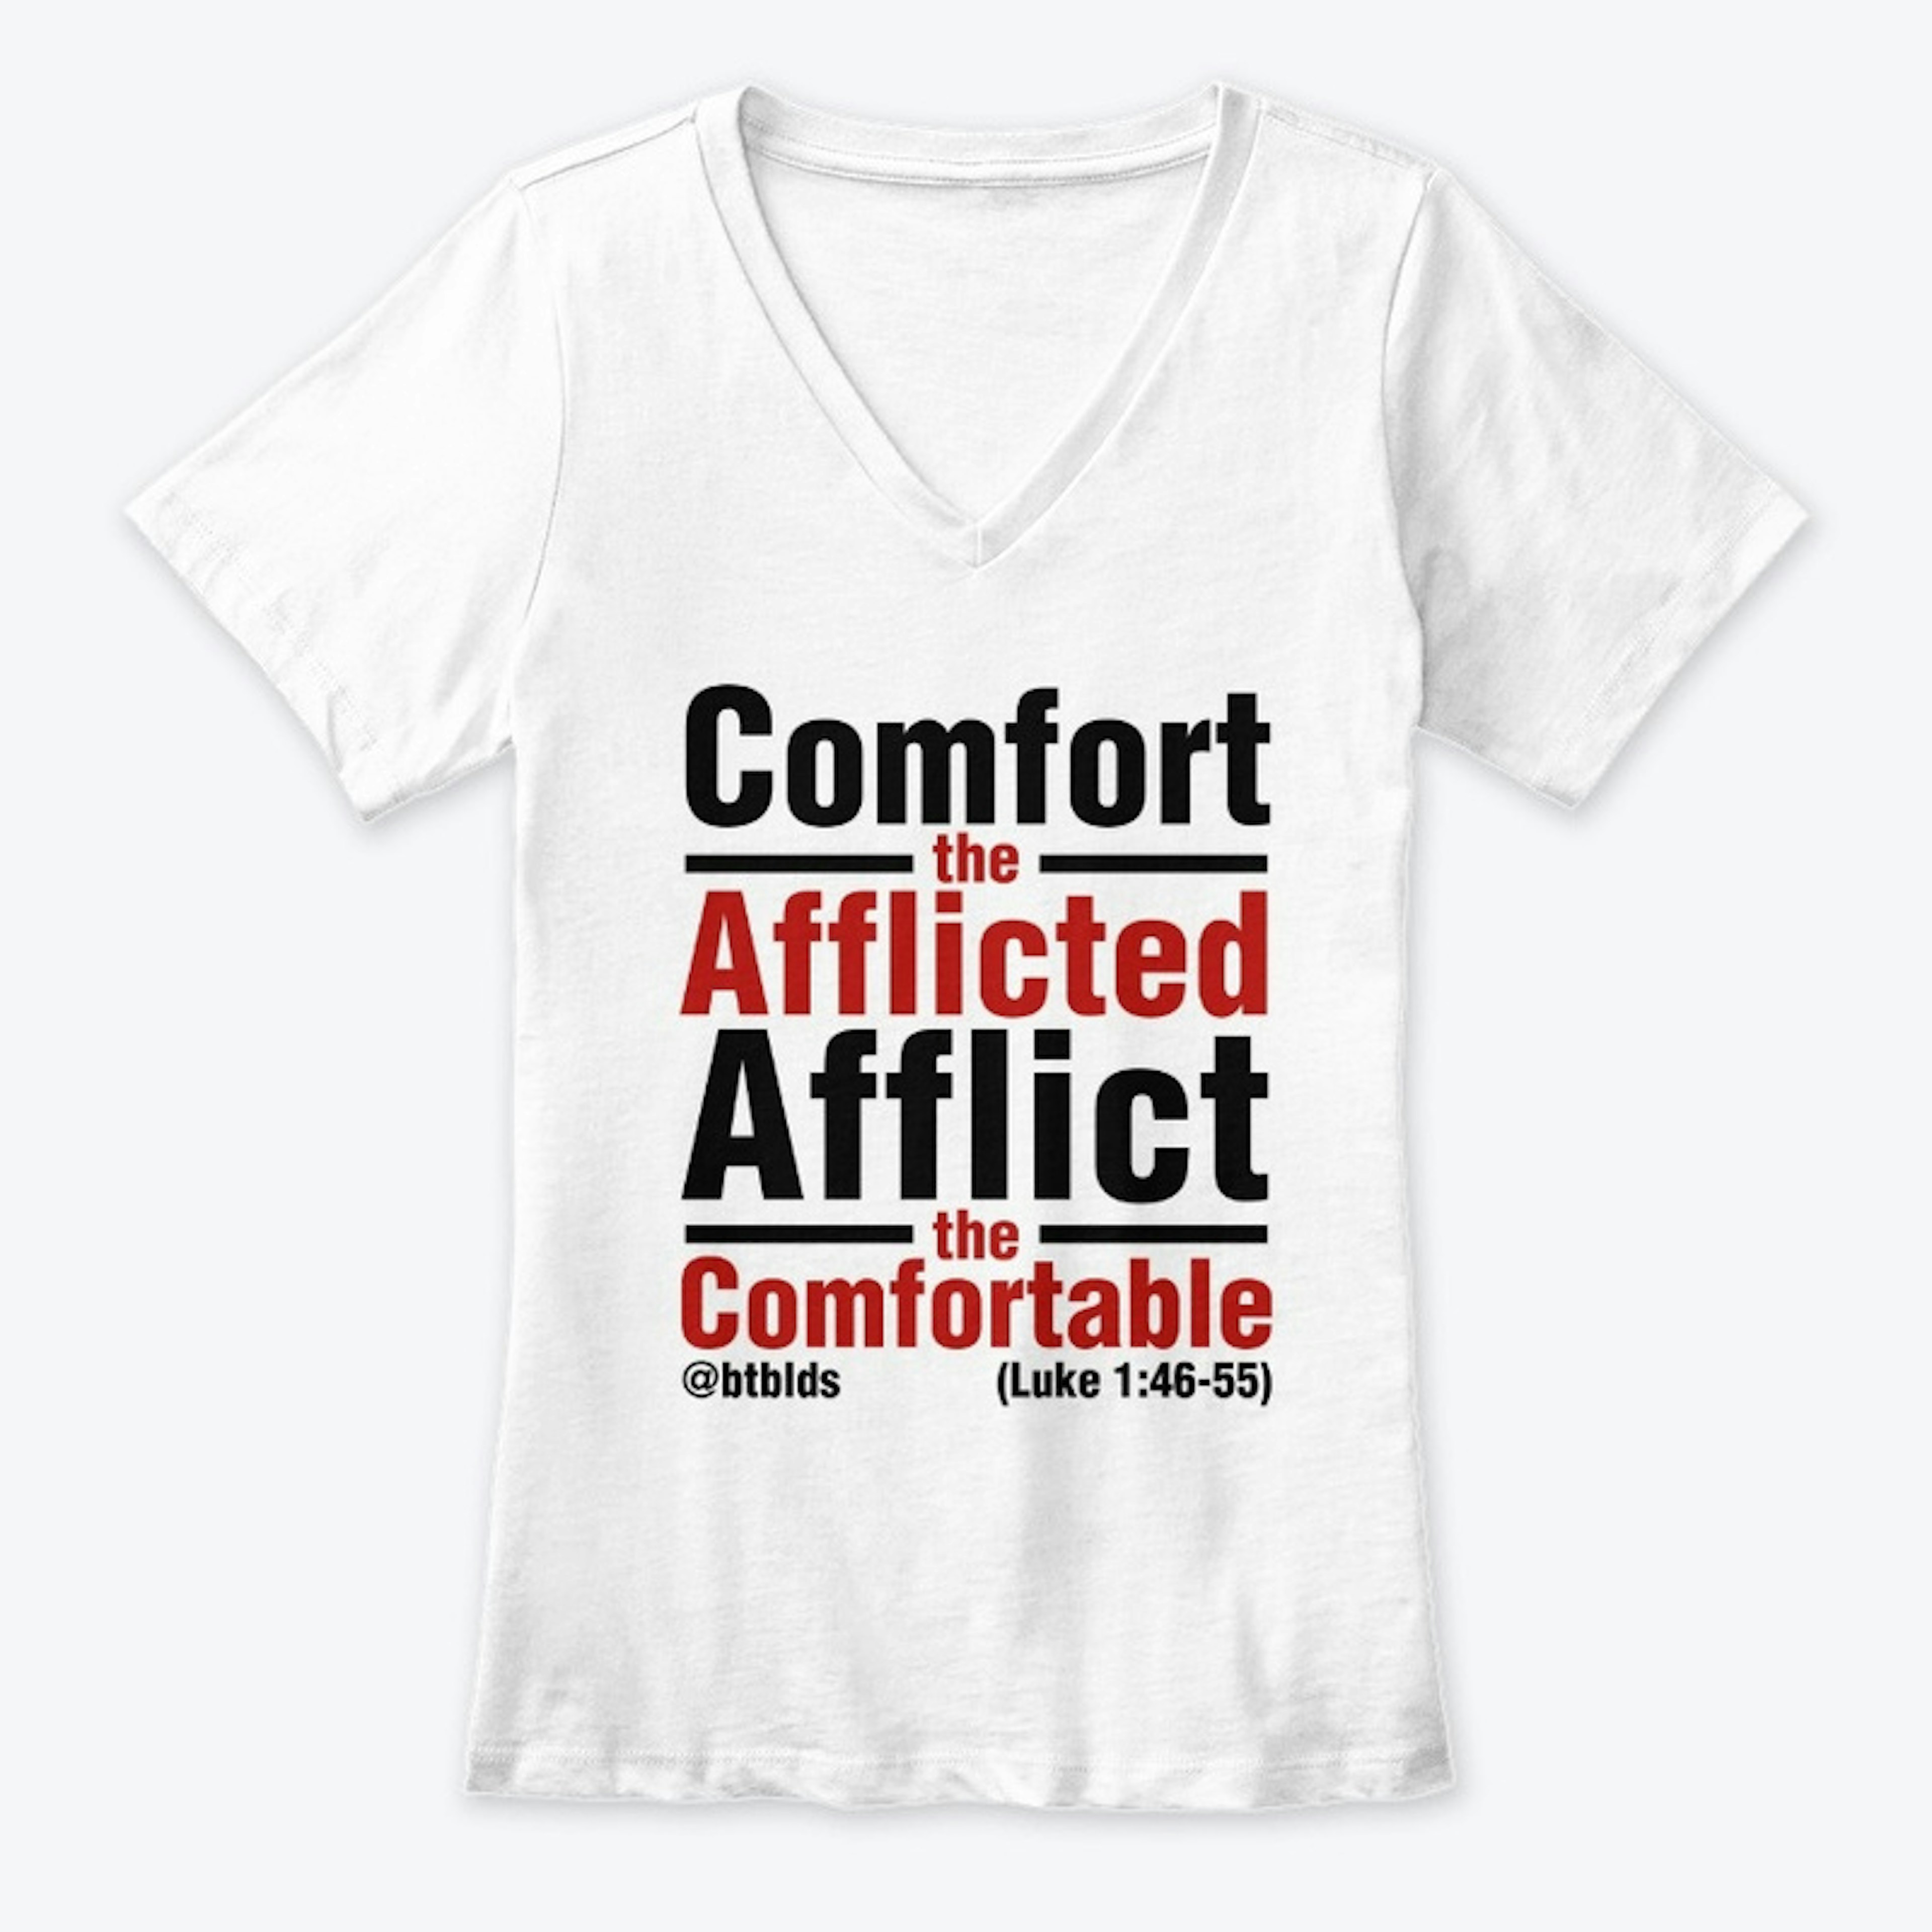 Comfort the Afflicte - White